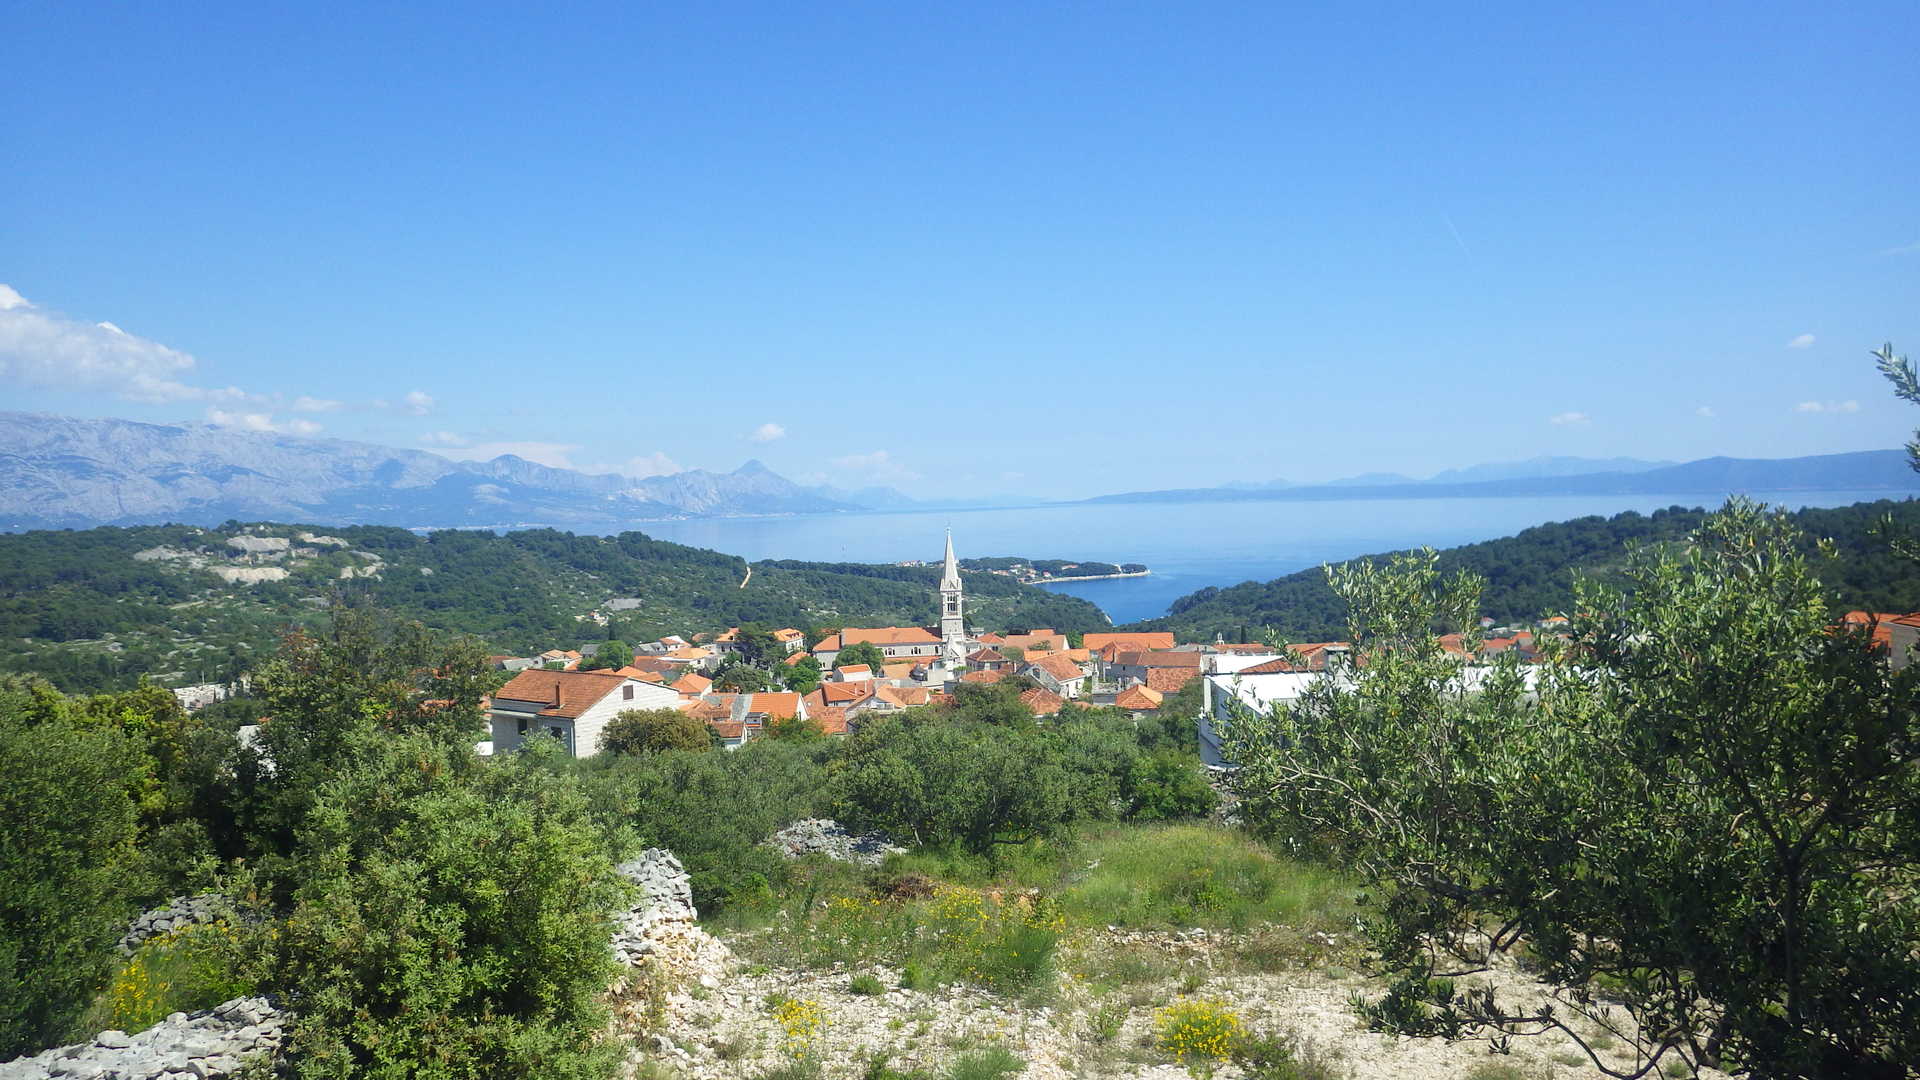 Randonnée a l'intérieur de l'île de Brac, Croatie